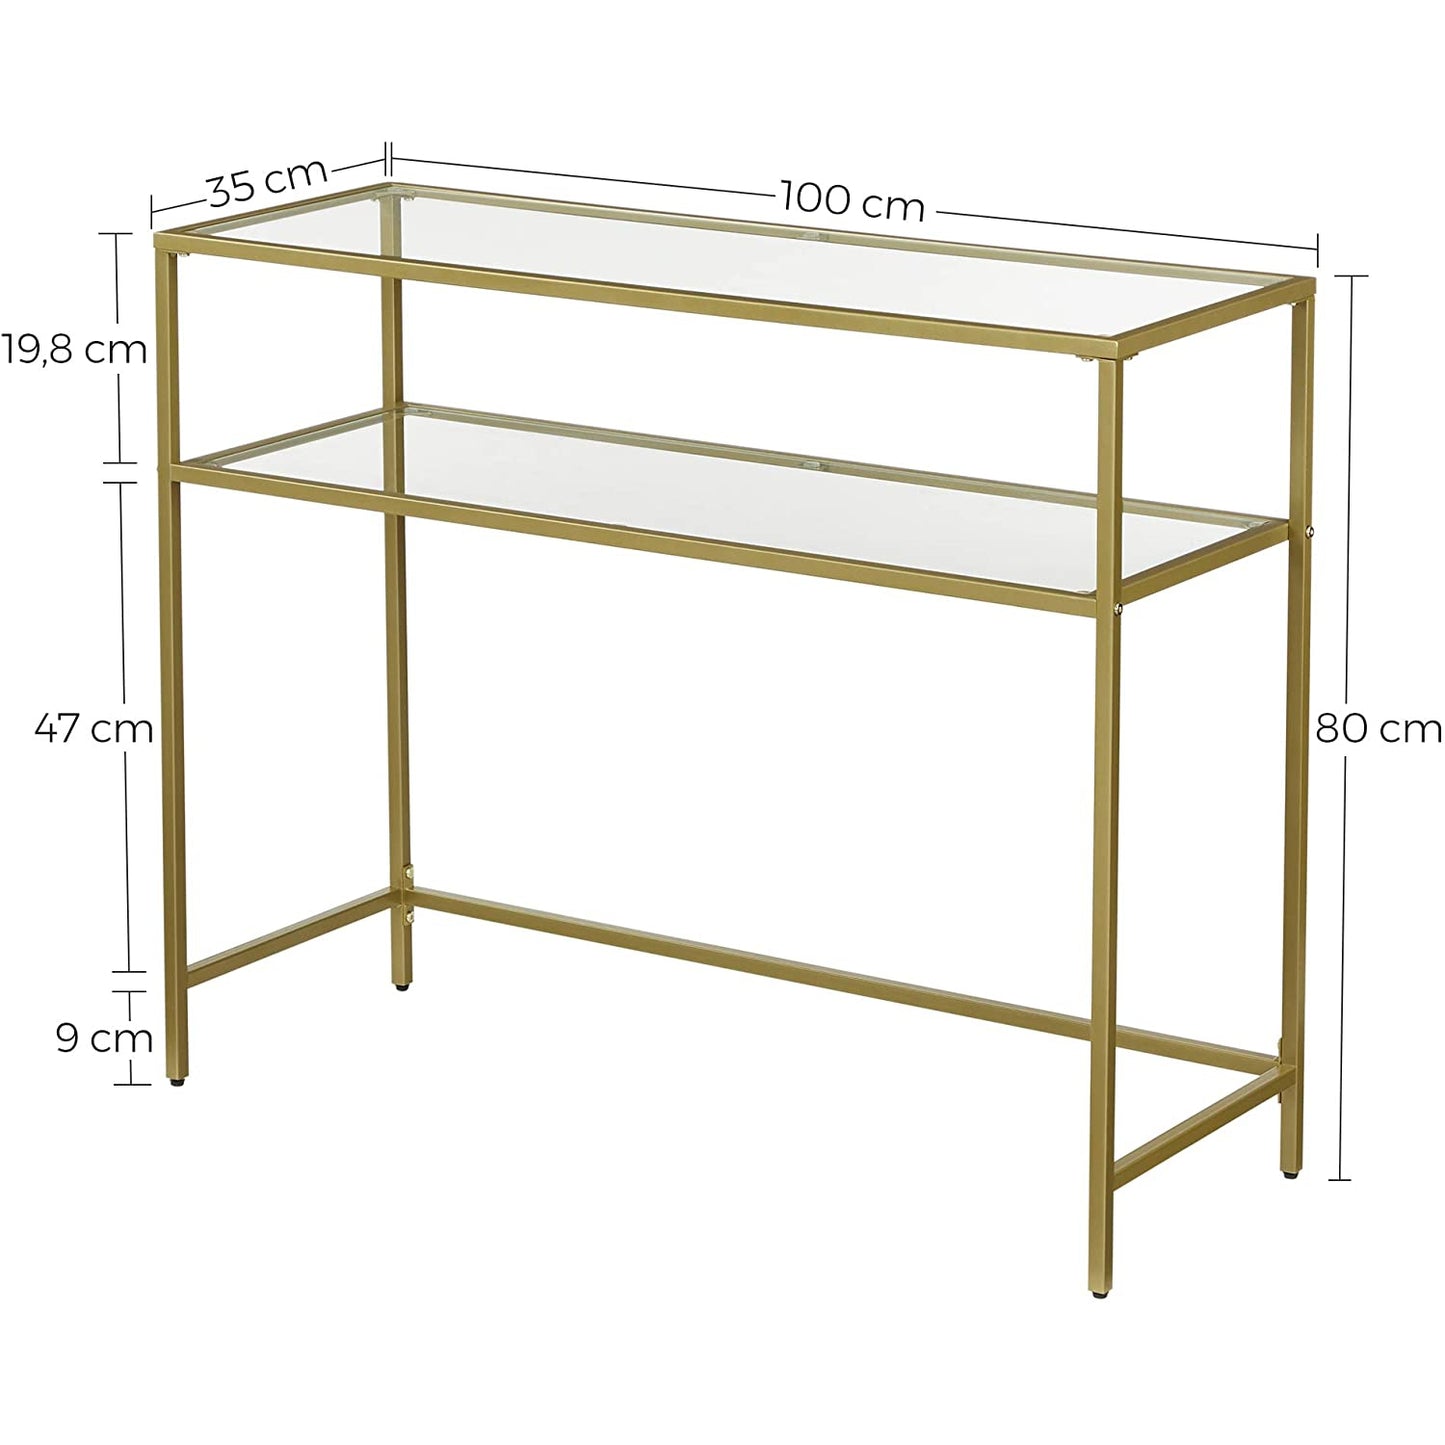 Table console Nancy's Goldfield - Table d'appoint - 2 niveaux - Verre trempé - Structure en métal - Pieds réglables - Or - 100 x 35 x 80 cm